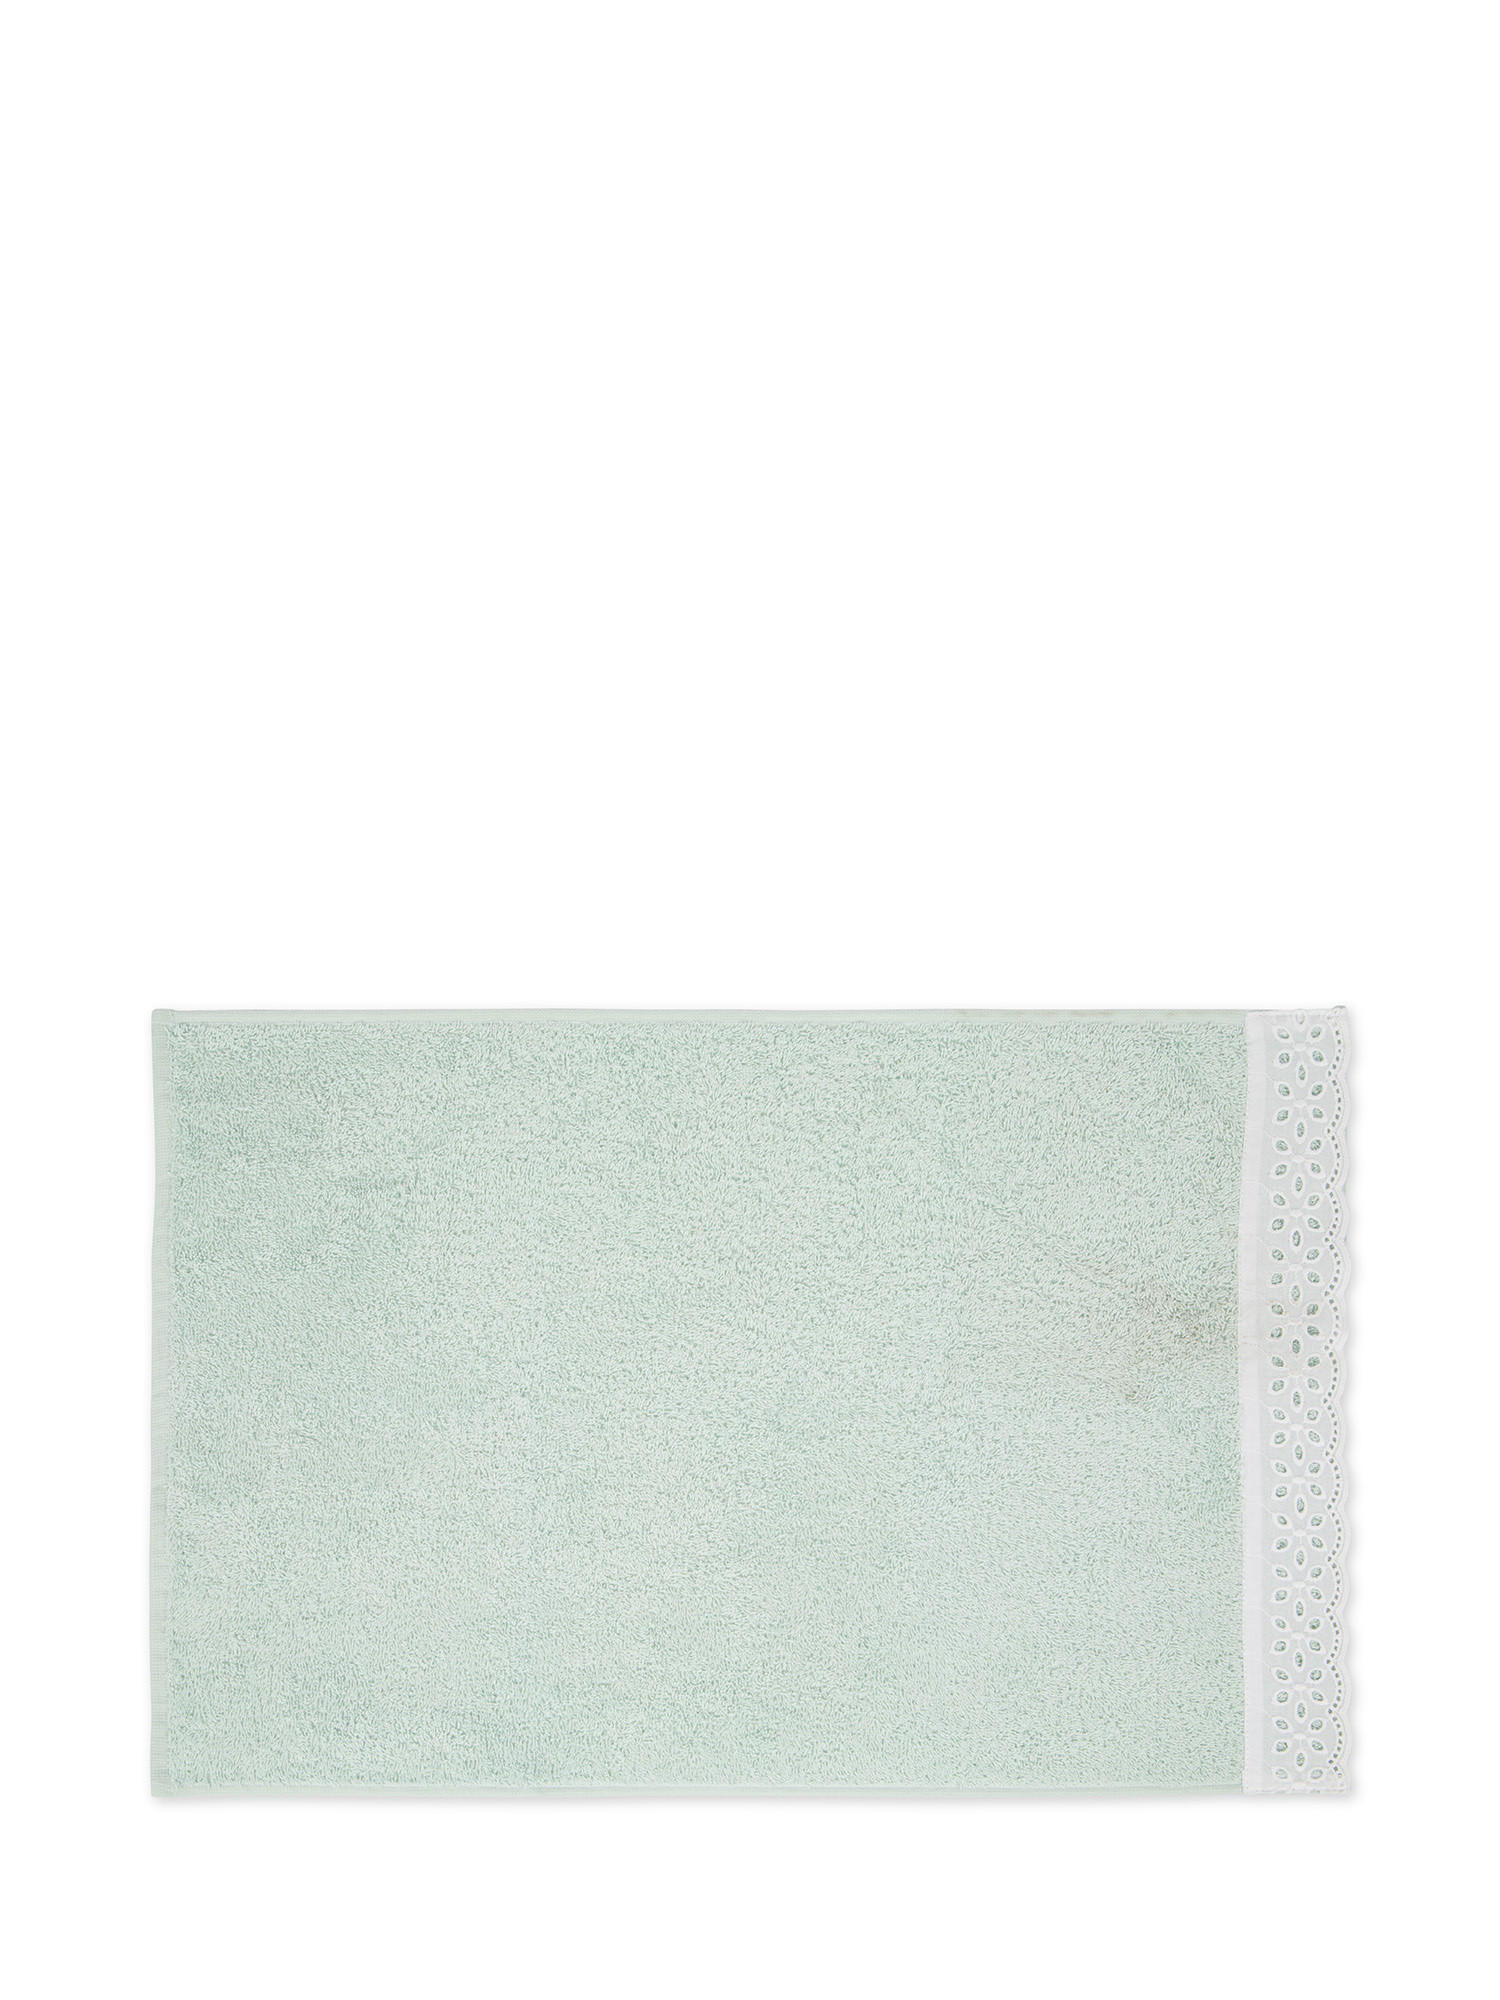 Asciugamano in spugna di cotone con bordo Sangallo, Verde salvia, large image number 1